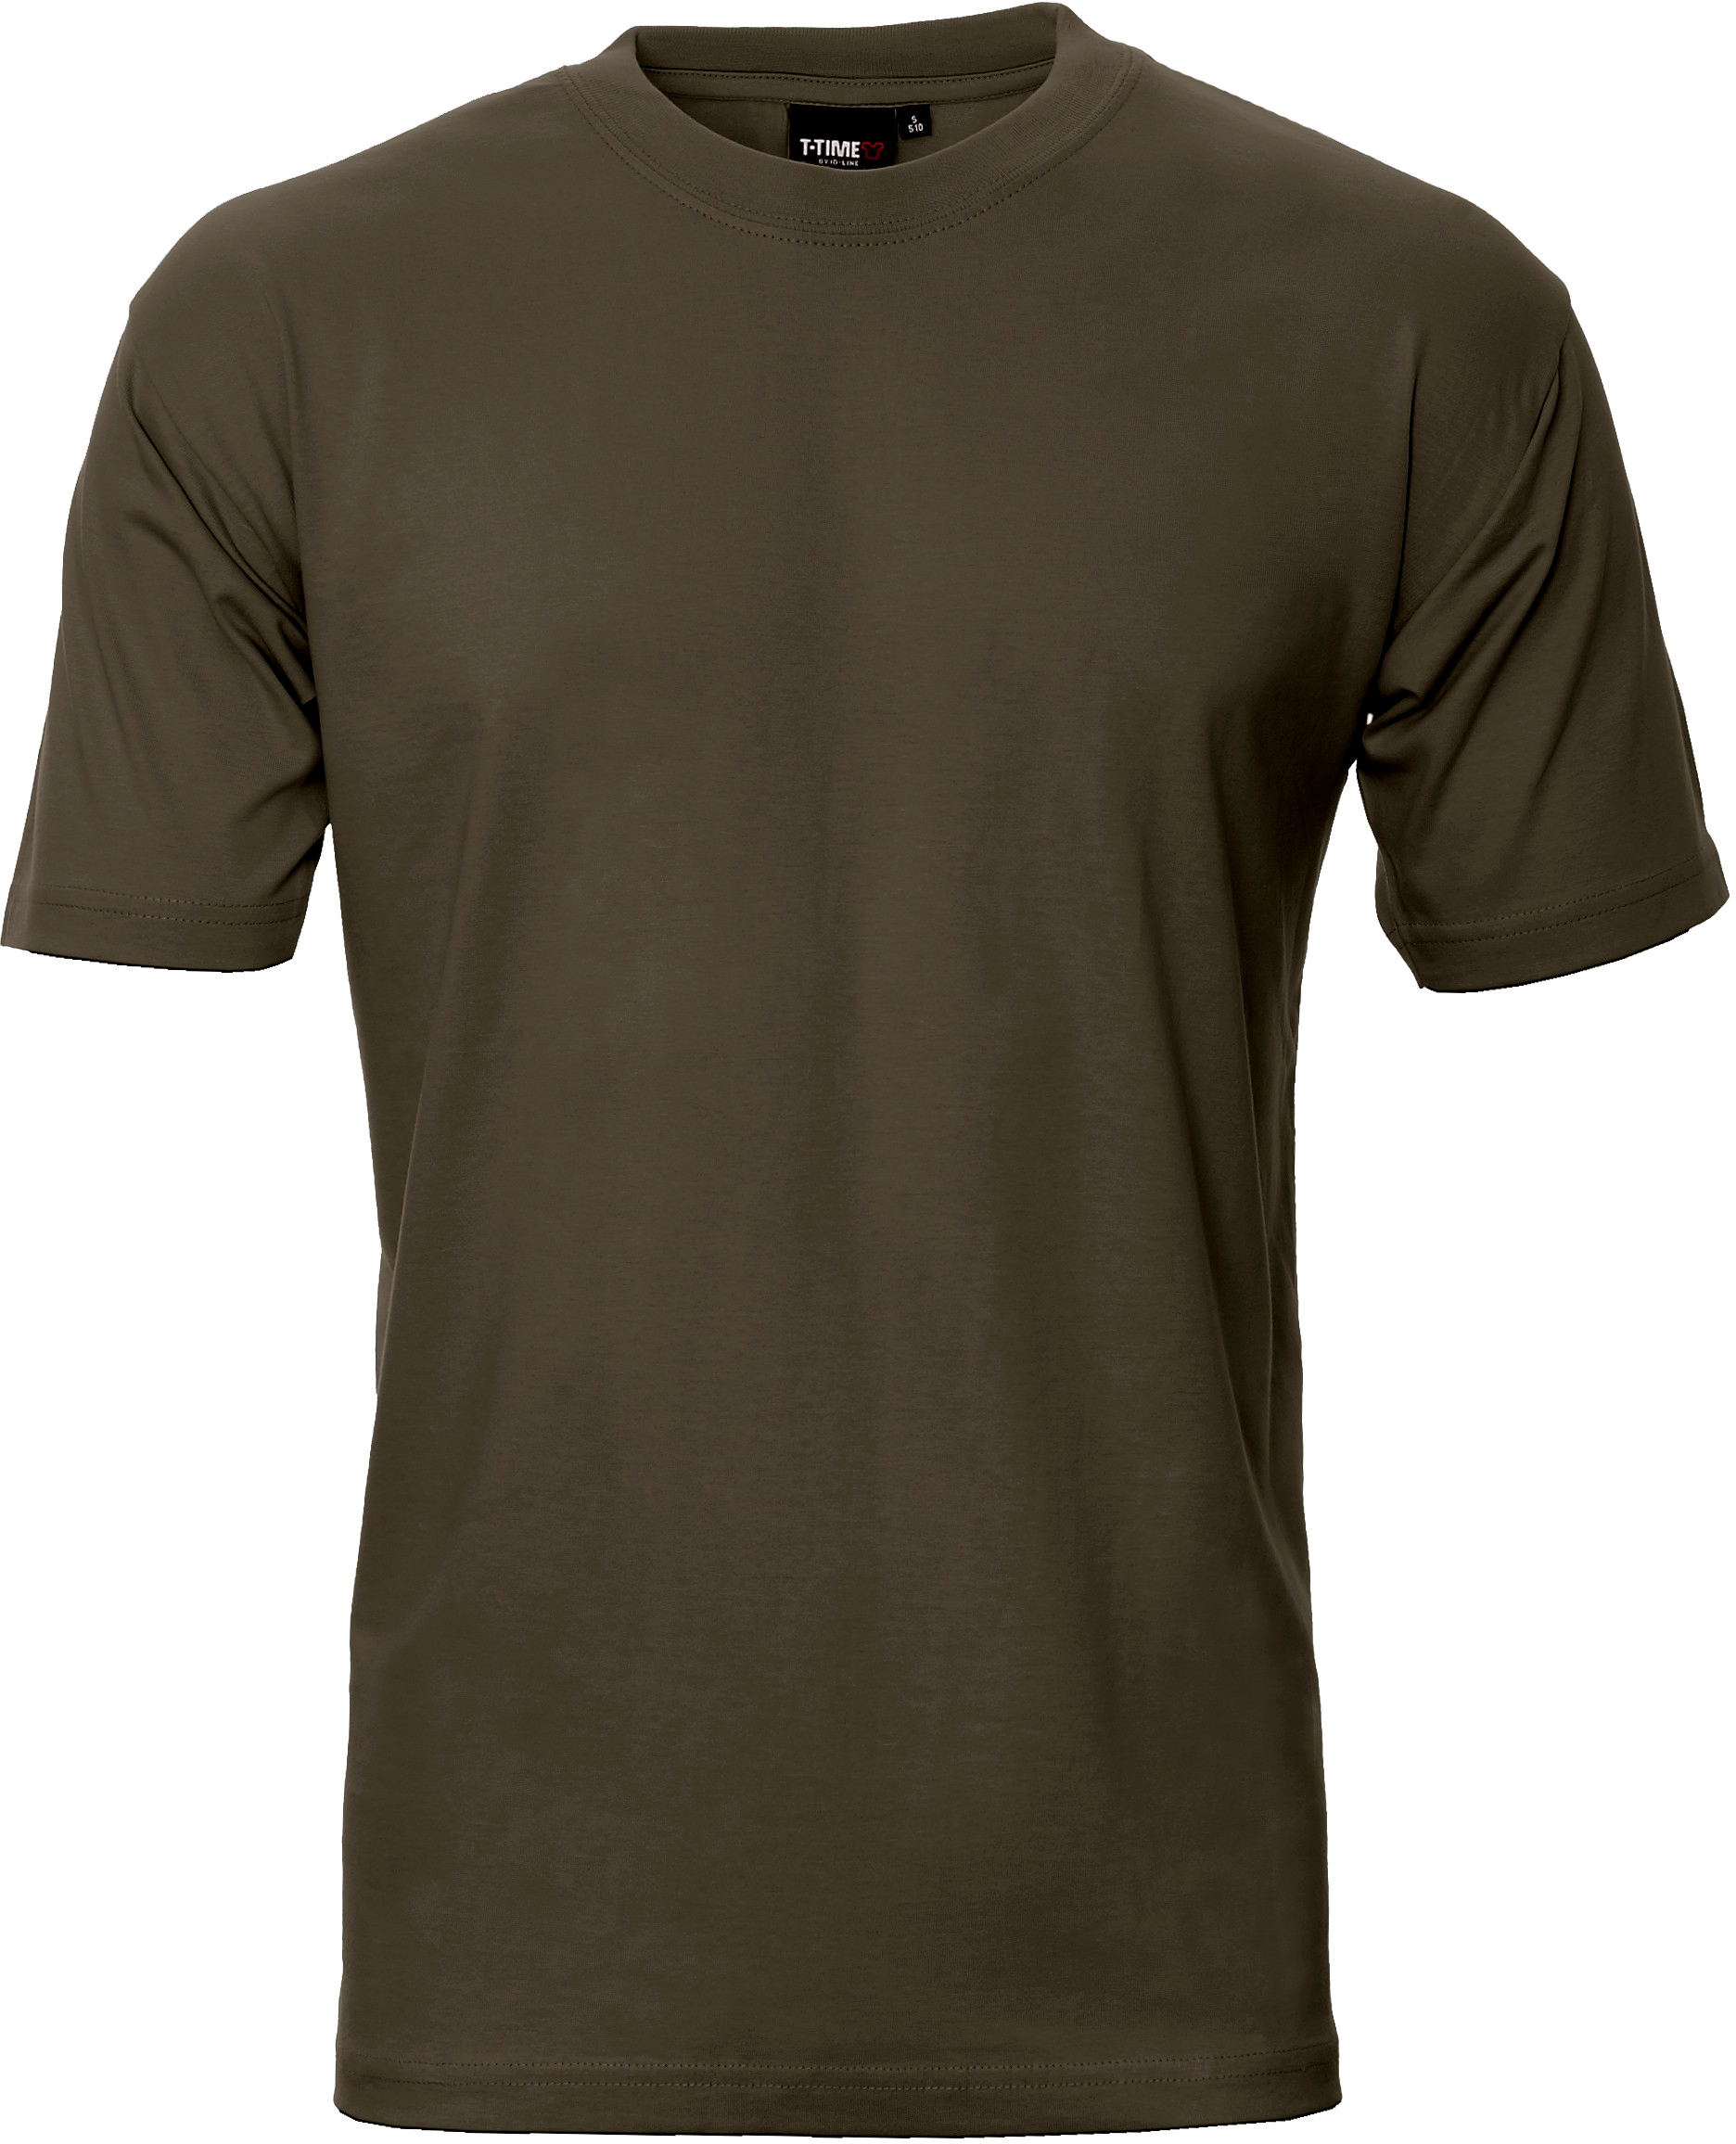 Oliven Herren T-Shirt, Basic (8150101)